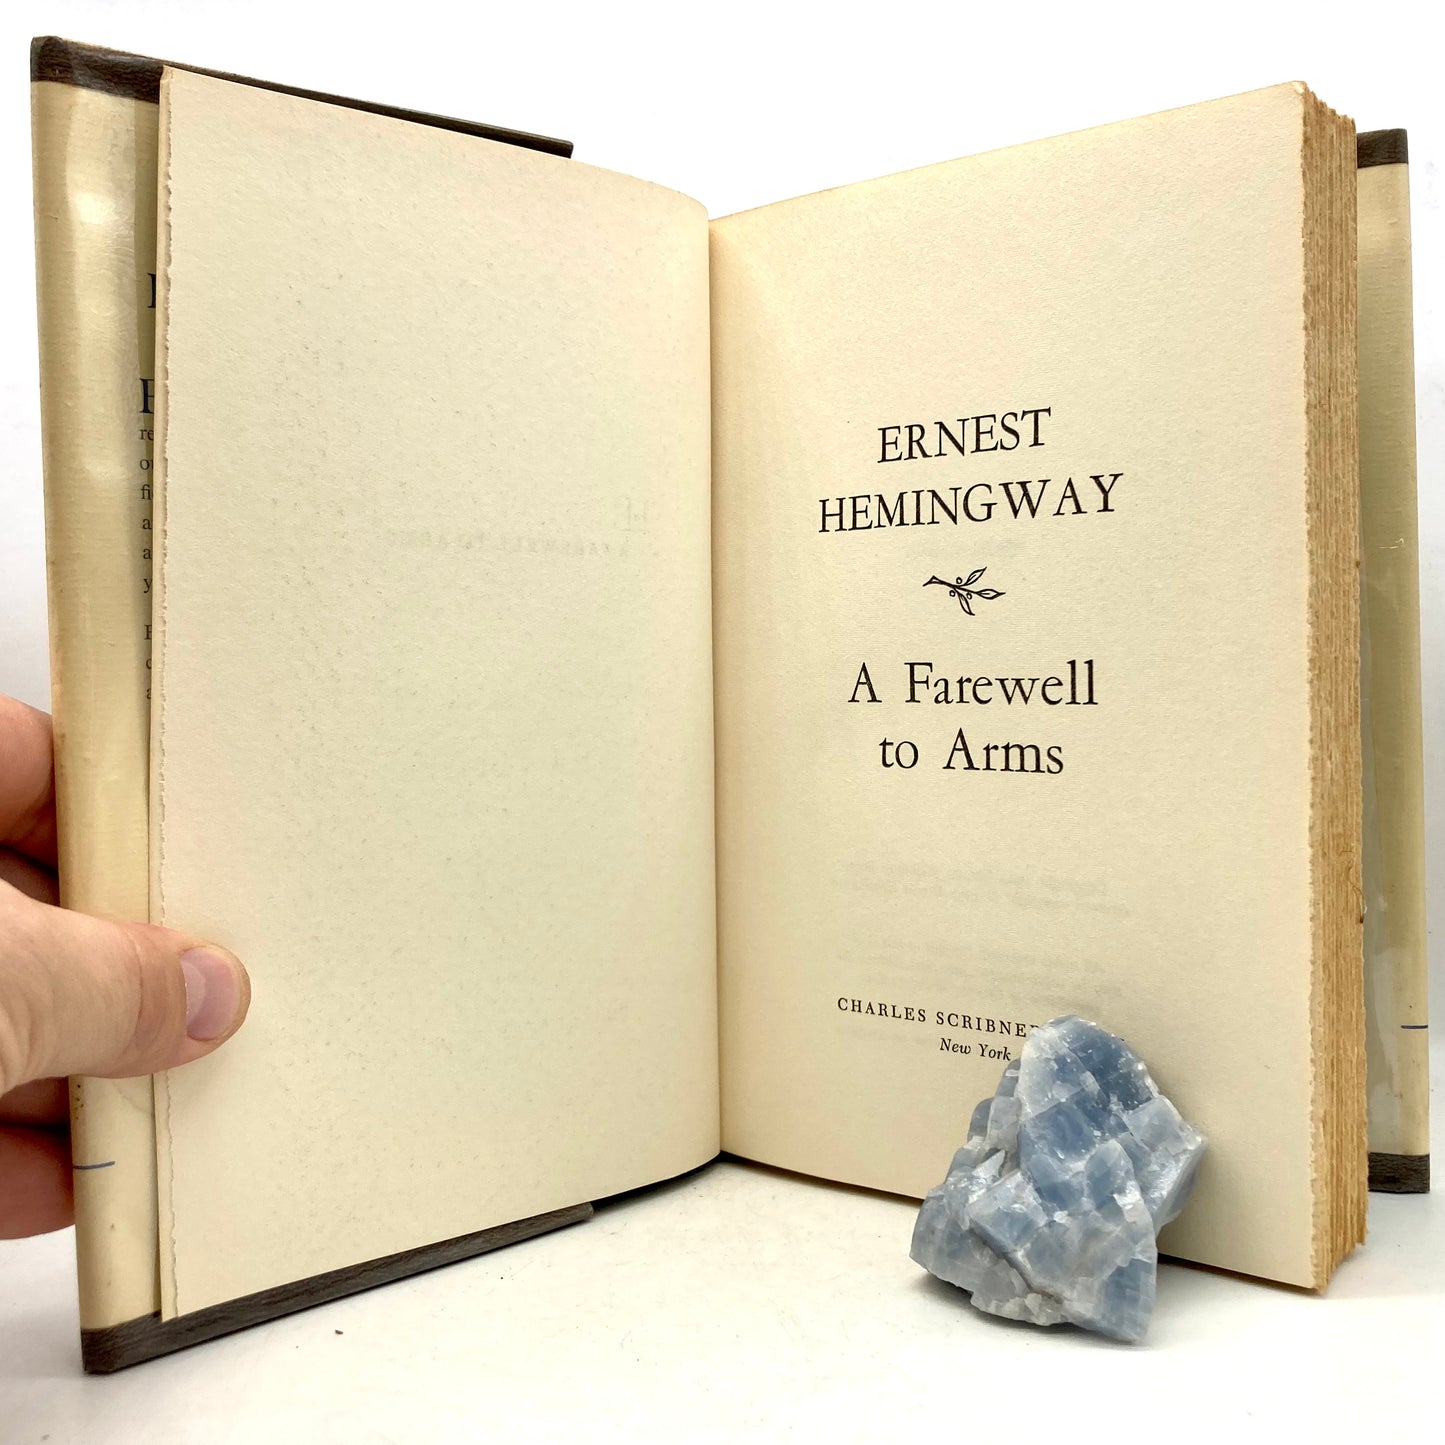 HEMINGWAY, Ernest "A Farewell Arms" [Scribners, 1957] - Buzz Bookstore